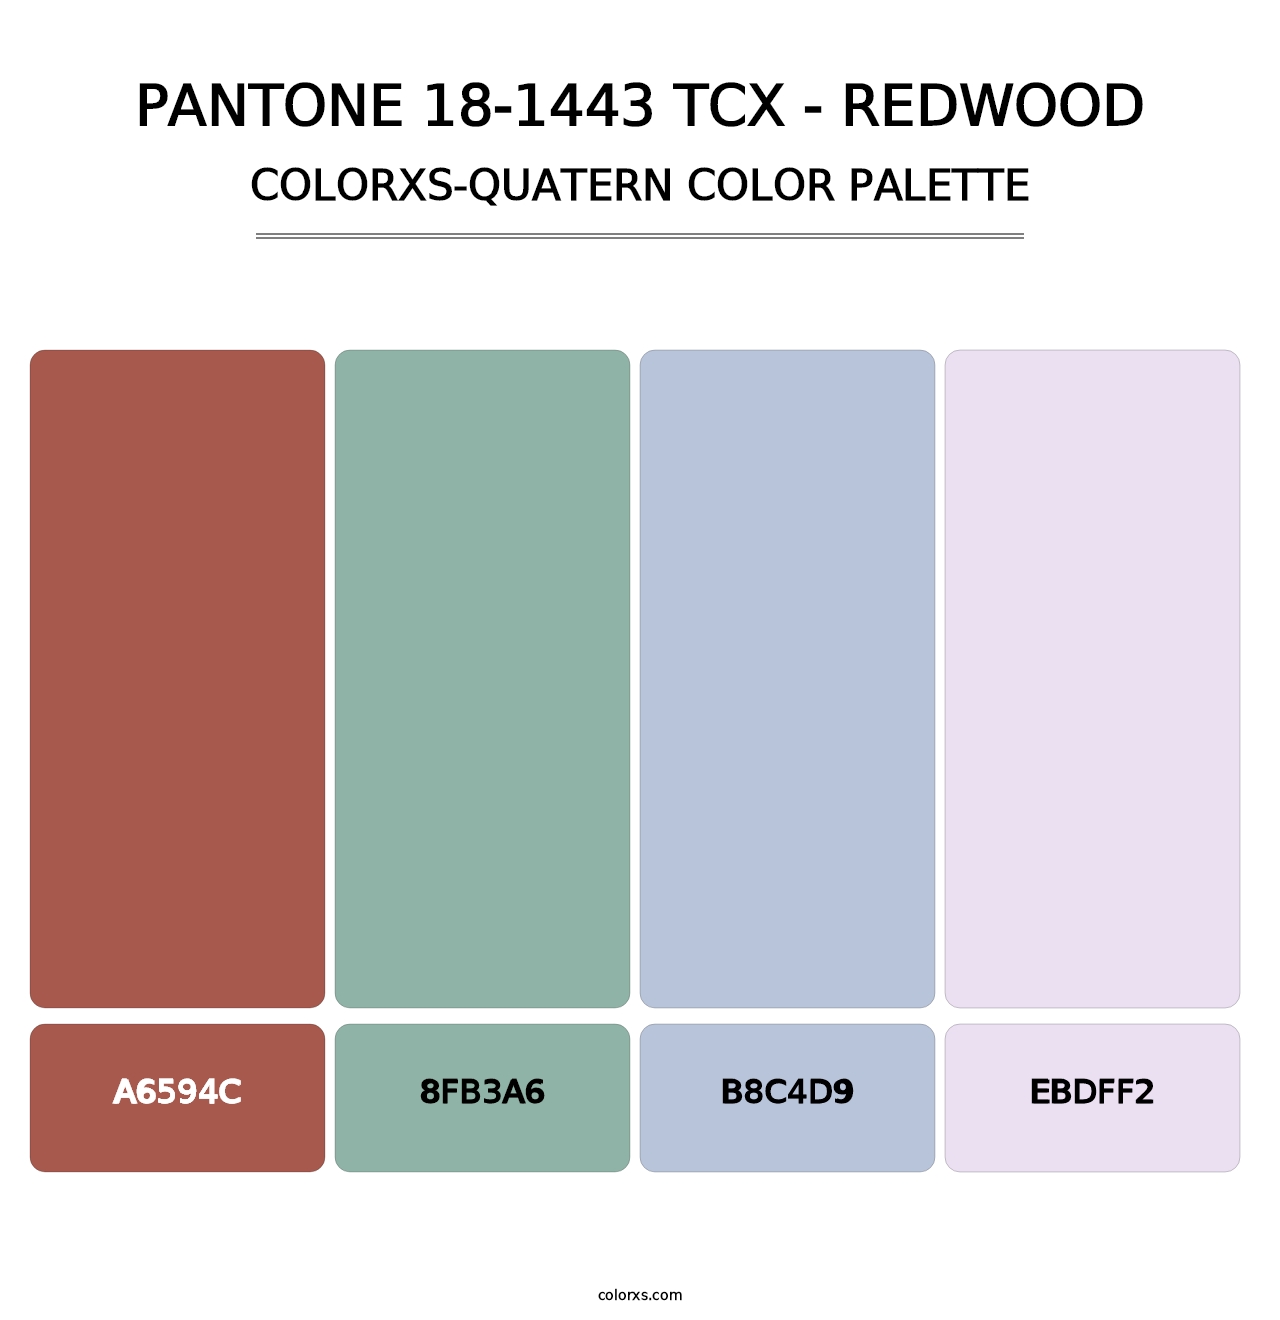 PANTONE 18-1443 TCX - Redwood - Colorxs Quatern Palette